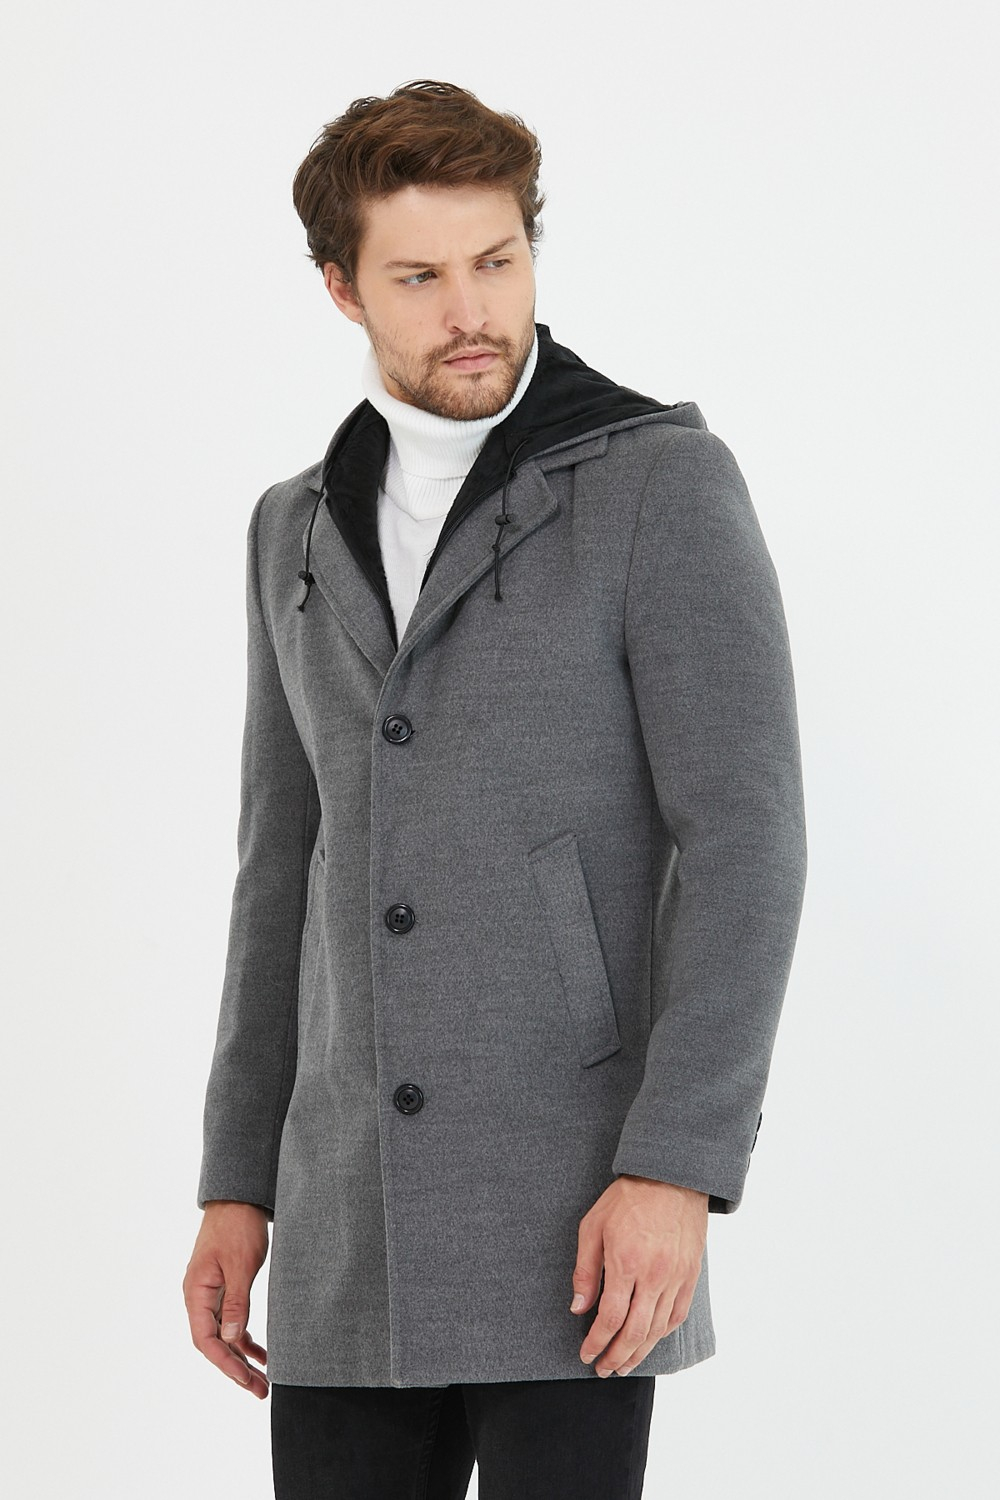 Мужское черное шерстяное пальто Mero Life с капюшоном, застежкой на молнию и пуговицы.